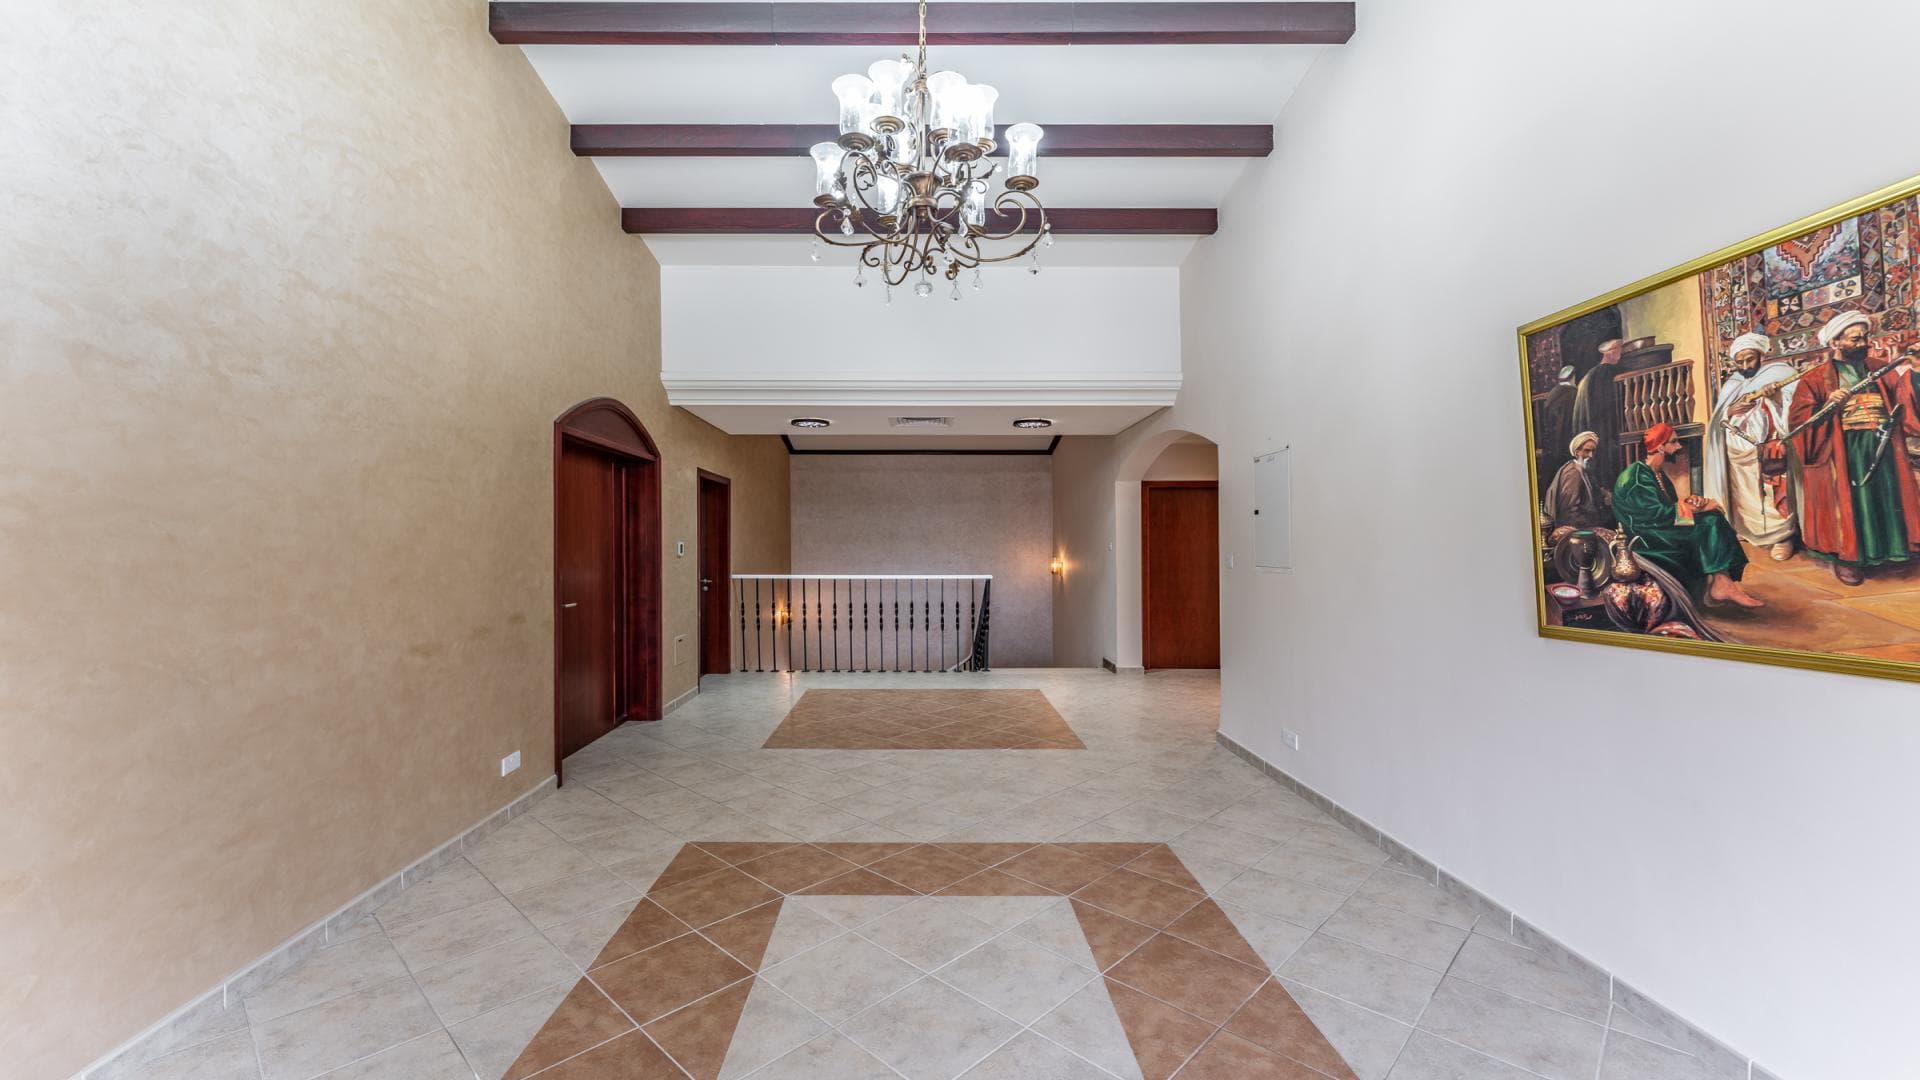 5 Bedroom Villa For Rent Al Thamam 36 Lp36037 1ea7eddc3e54eb00.jpg